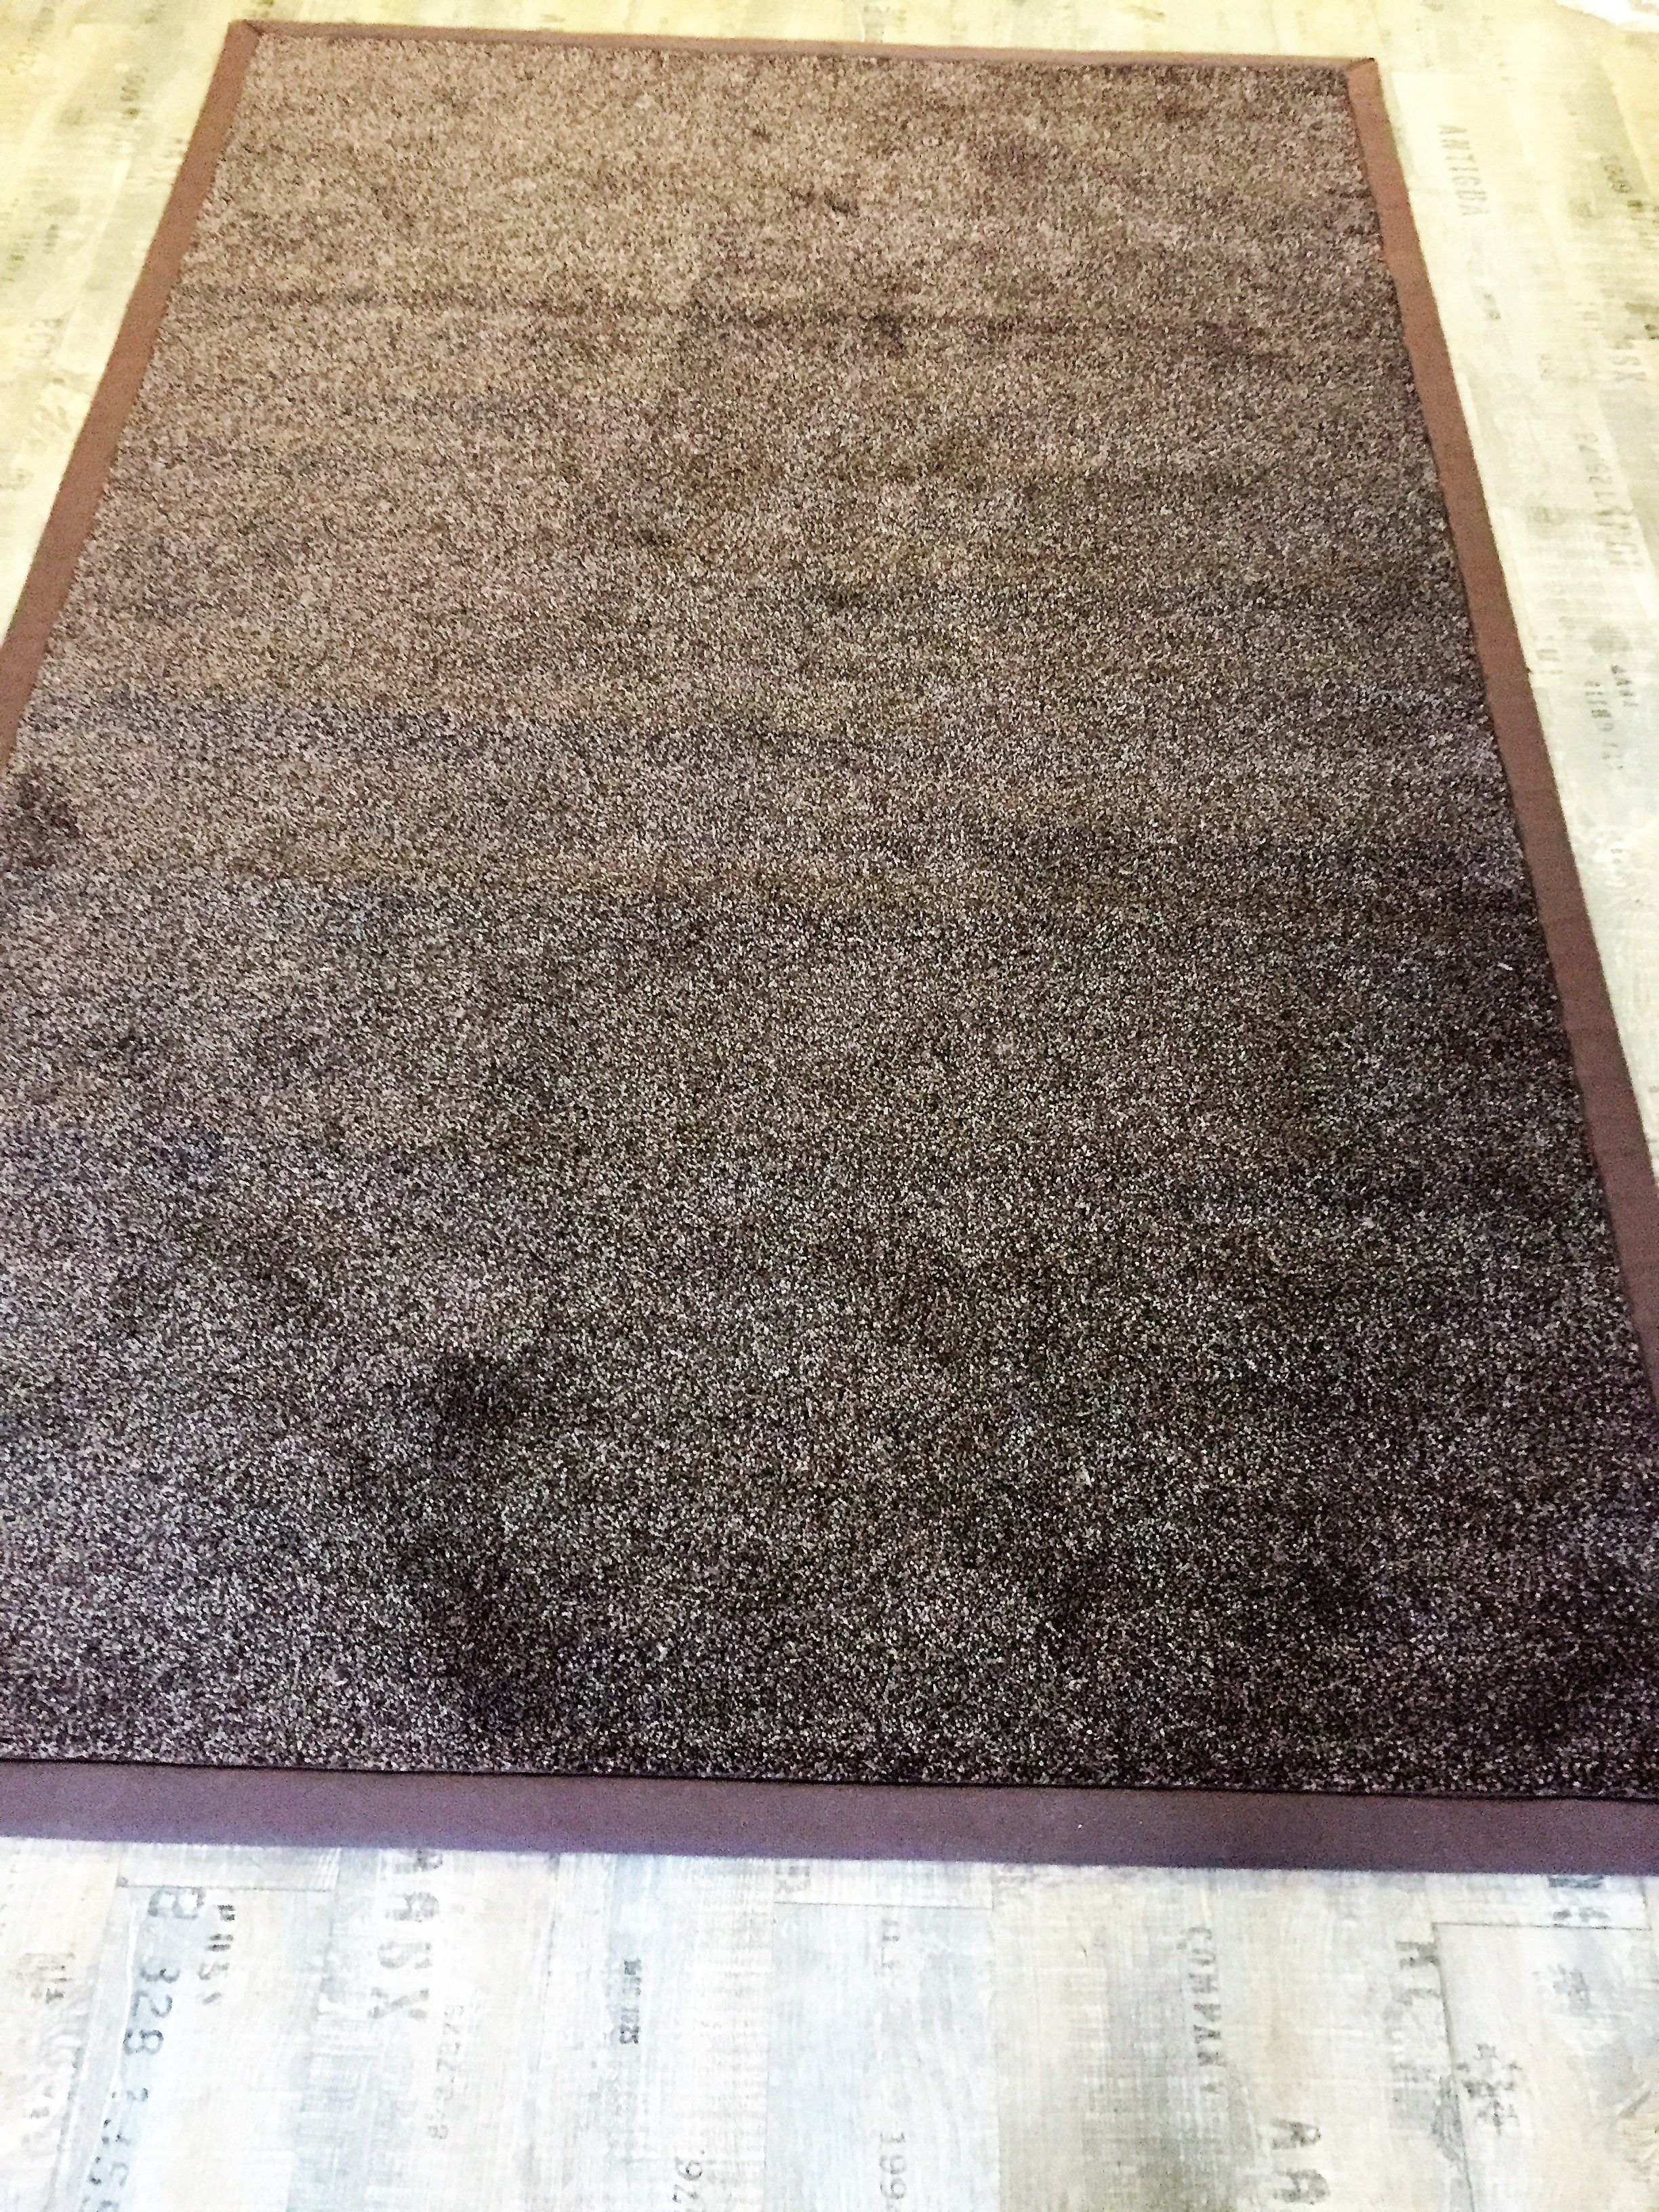 Arena Schelden evenaar Karpet Stockholm Brown 160 x 240 cm van € 149-, voor € 65-, – Langenbach  tapijt | De goedkoopste leverancier van karpetten en vloerkleden. Kuntgras  kunst gras voordelig